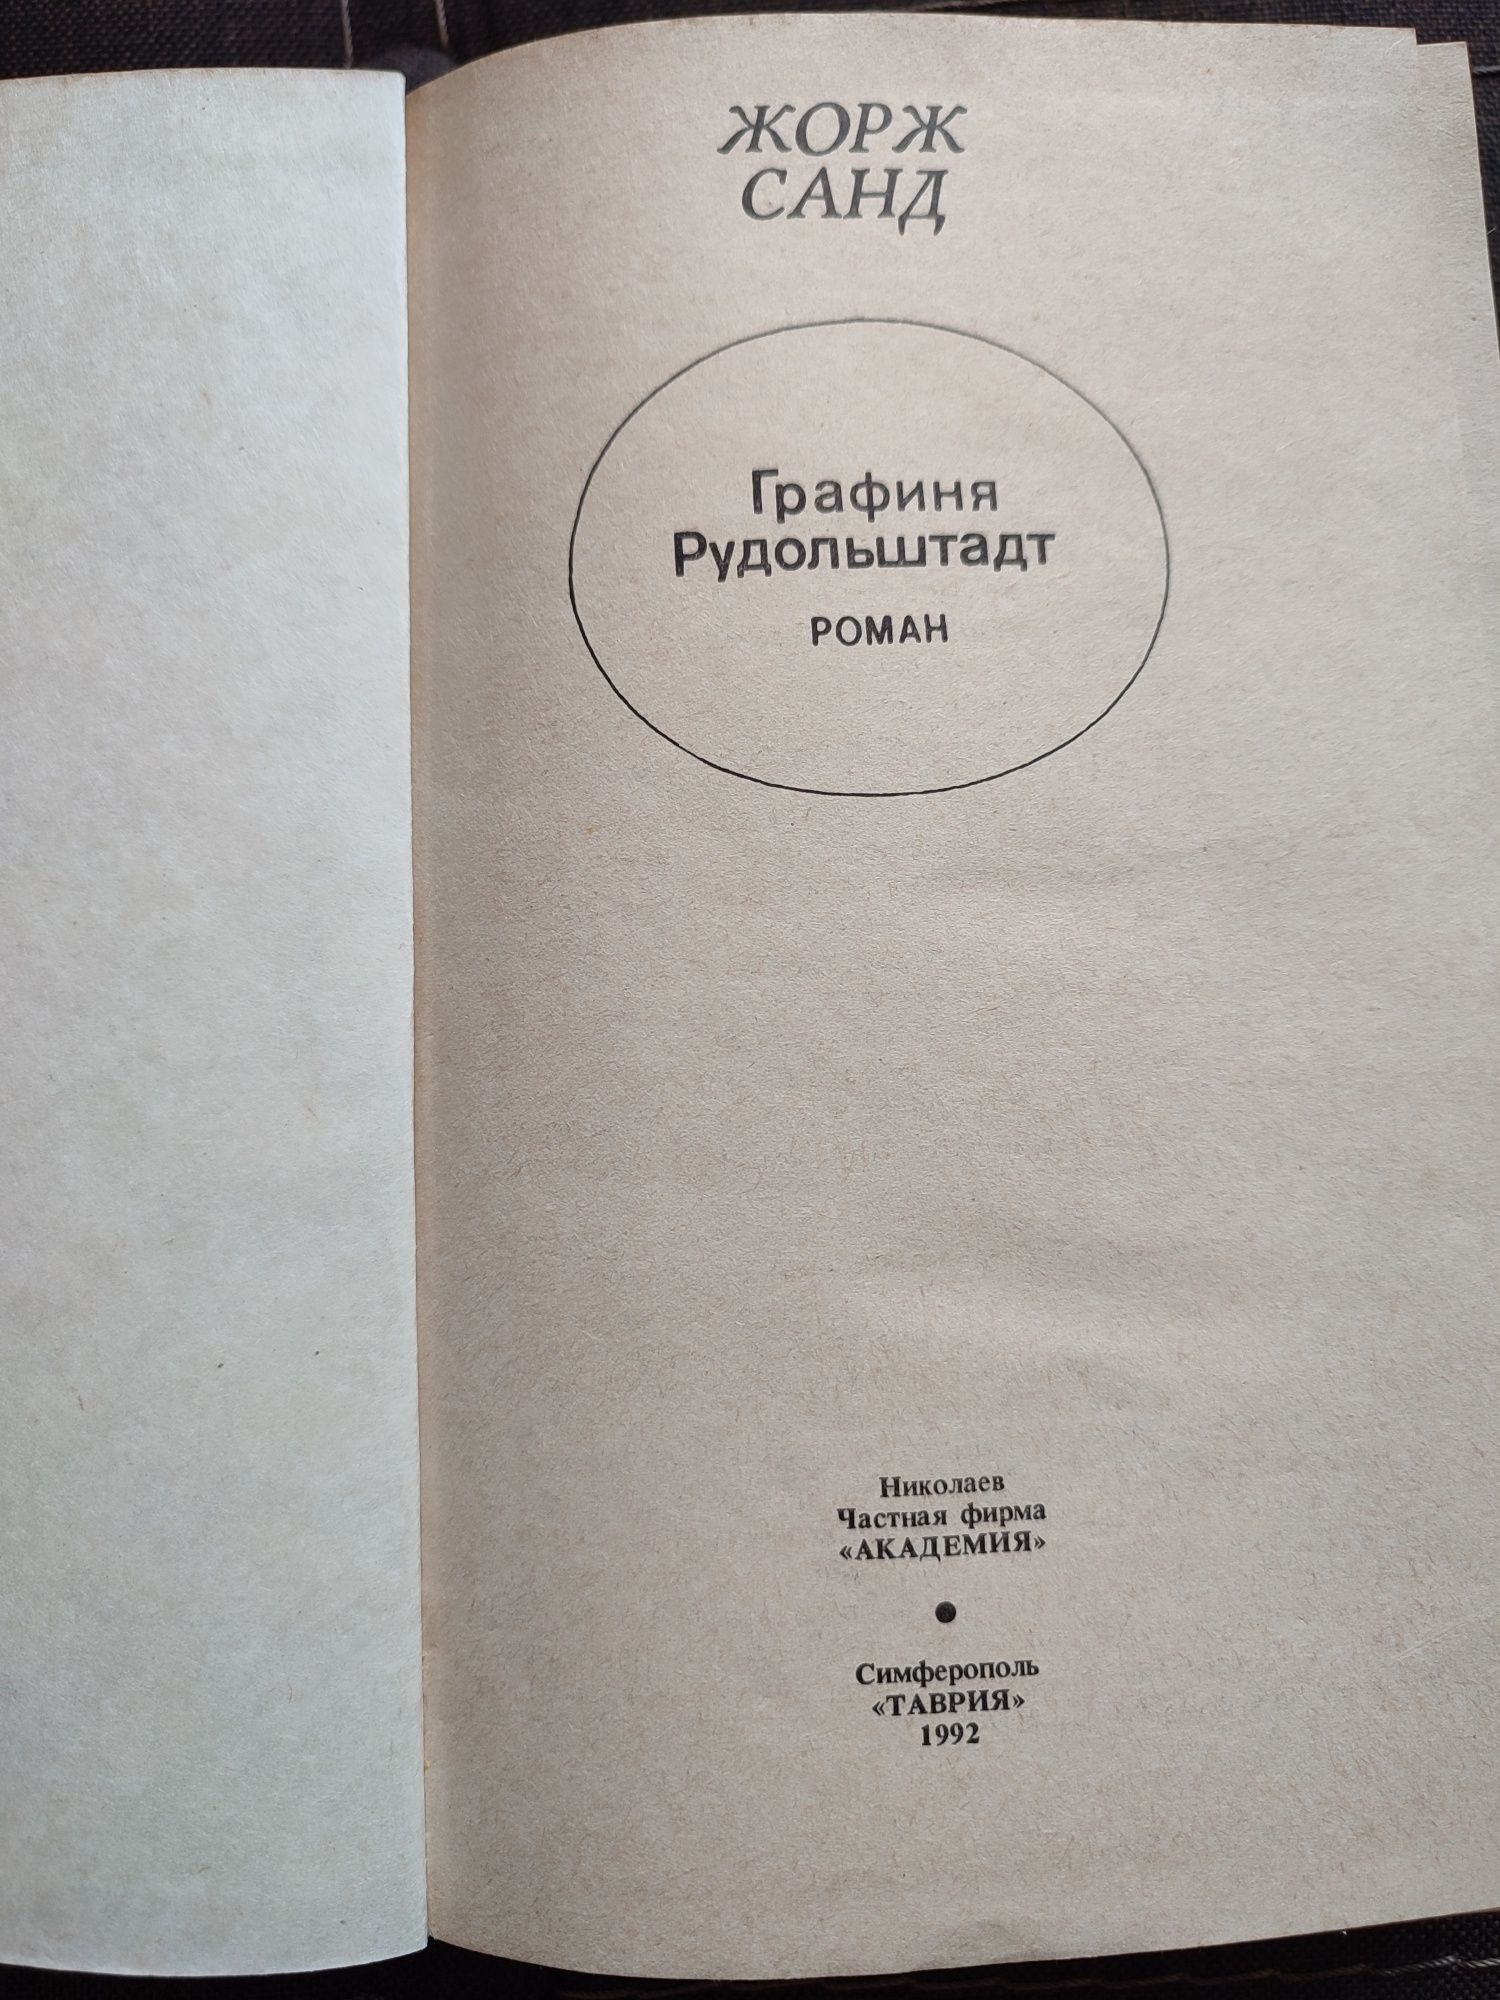 Жорж Санд 3 Книги російською мовою